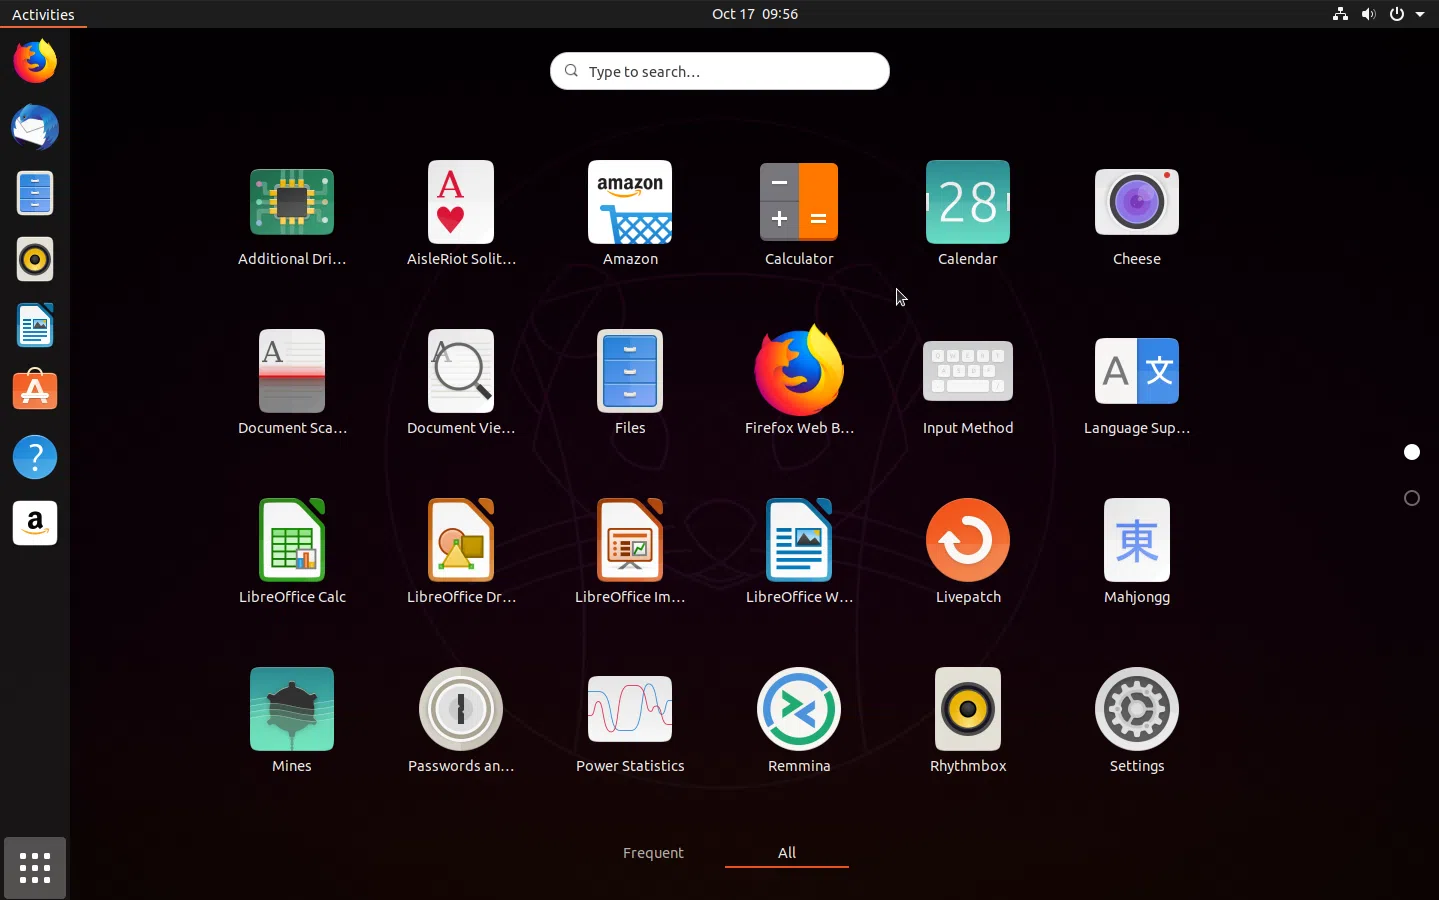 Imagens do Ubuntu 19.10 Yaru